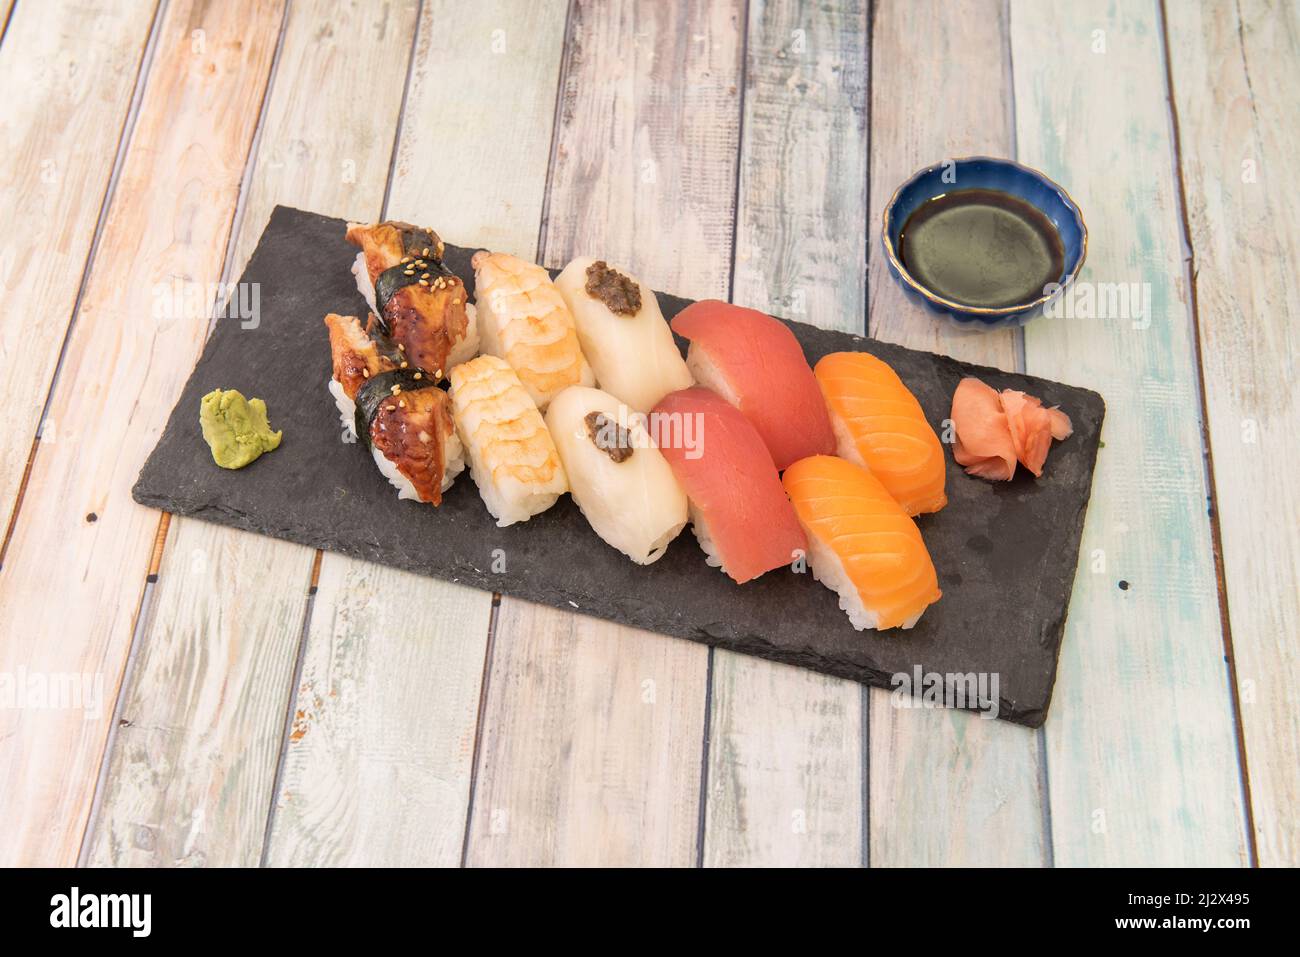 Plateau de sushis assortis avec nigiri de crevettes, saumon norvégien, anguille fumée, antun rouge, wasabi et gingembre Banque D'Images